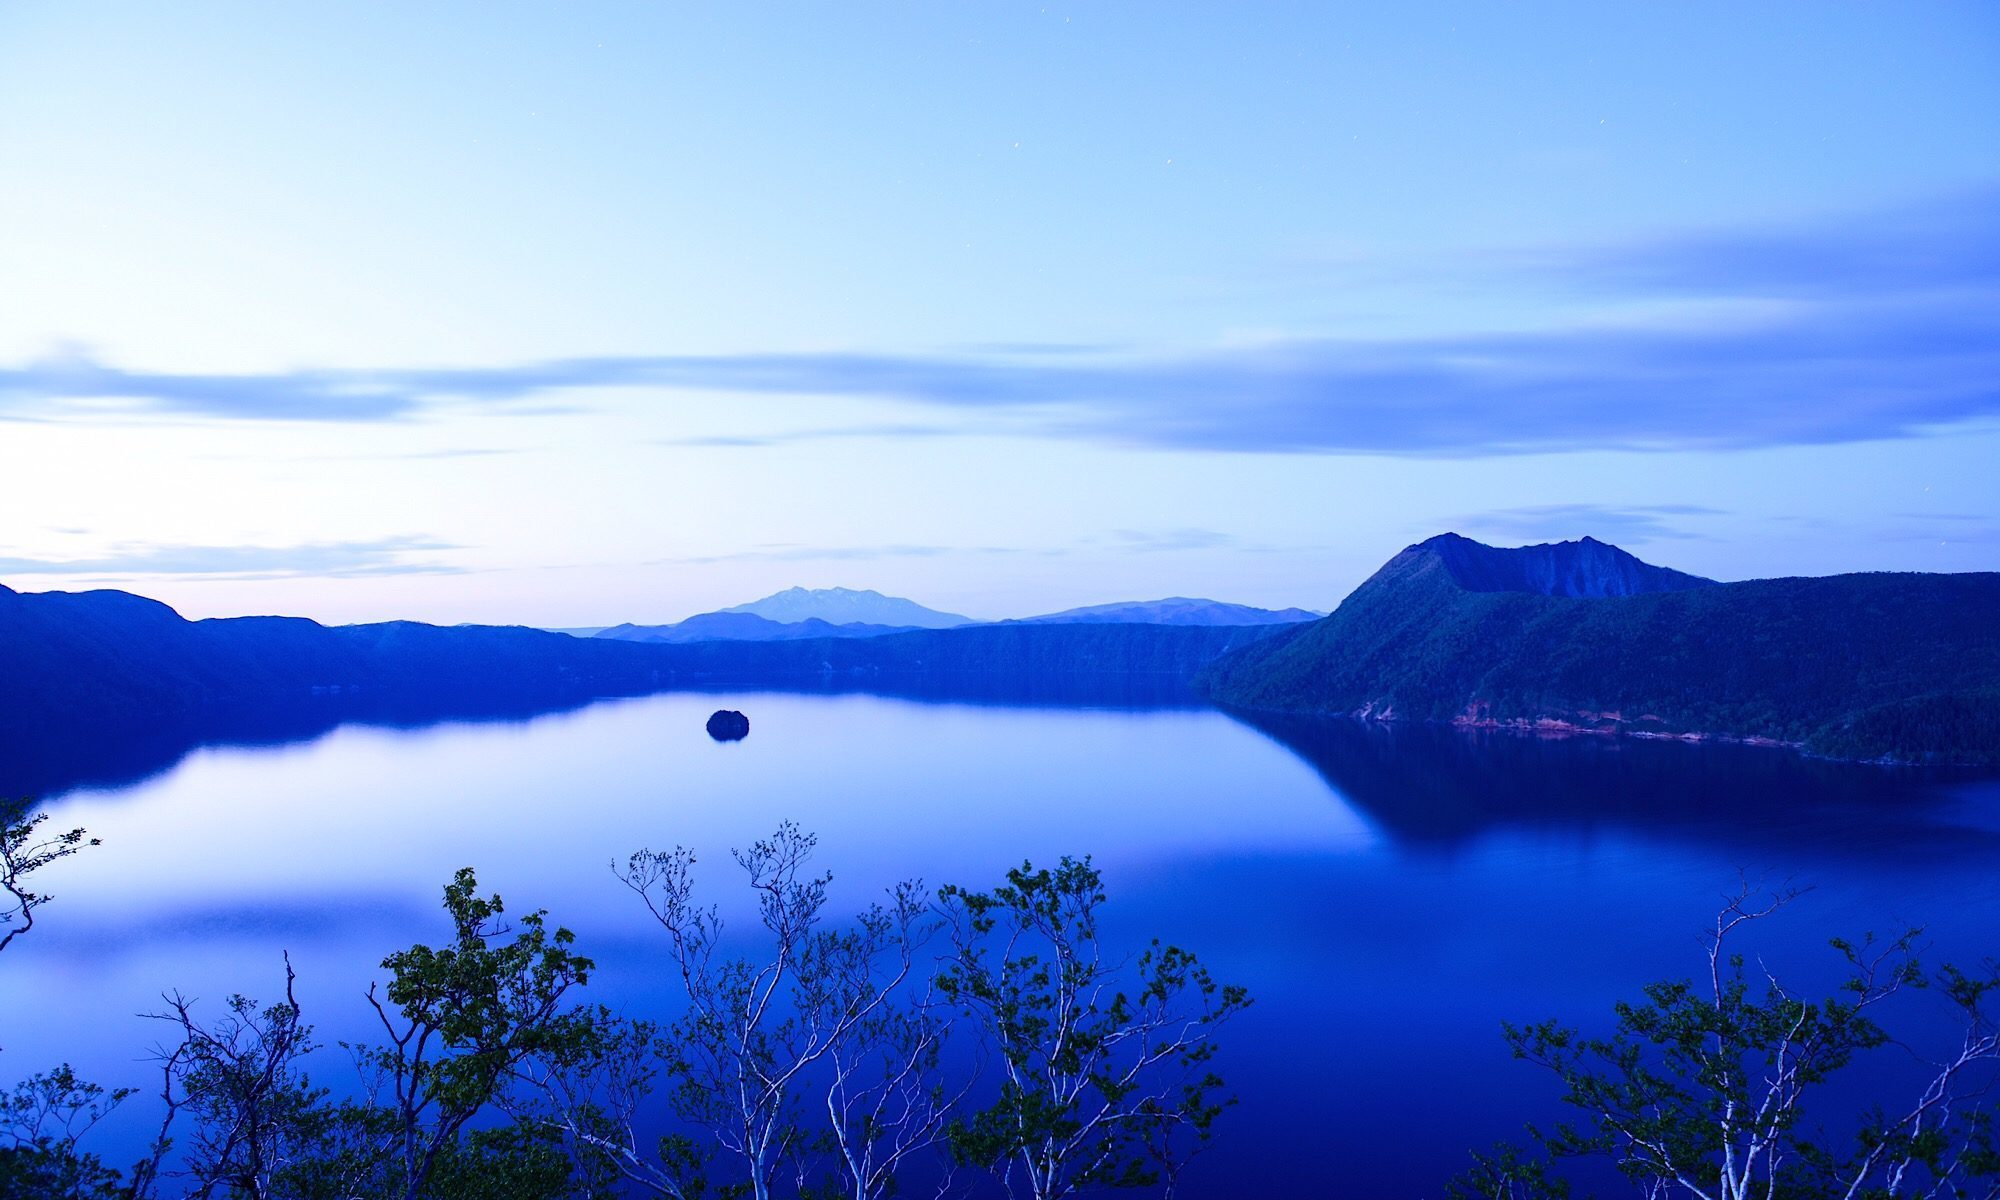 ブランドイメージコンセプトとなる北海道の摩周湖に浮かぶカムイッシュ島。ブルーに染まる美しい夕景画像。